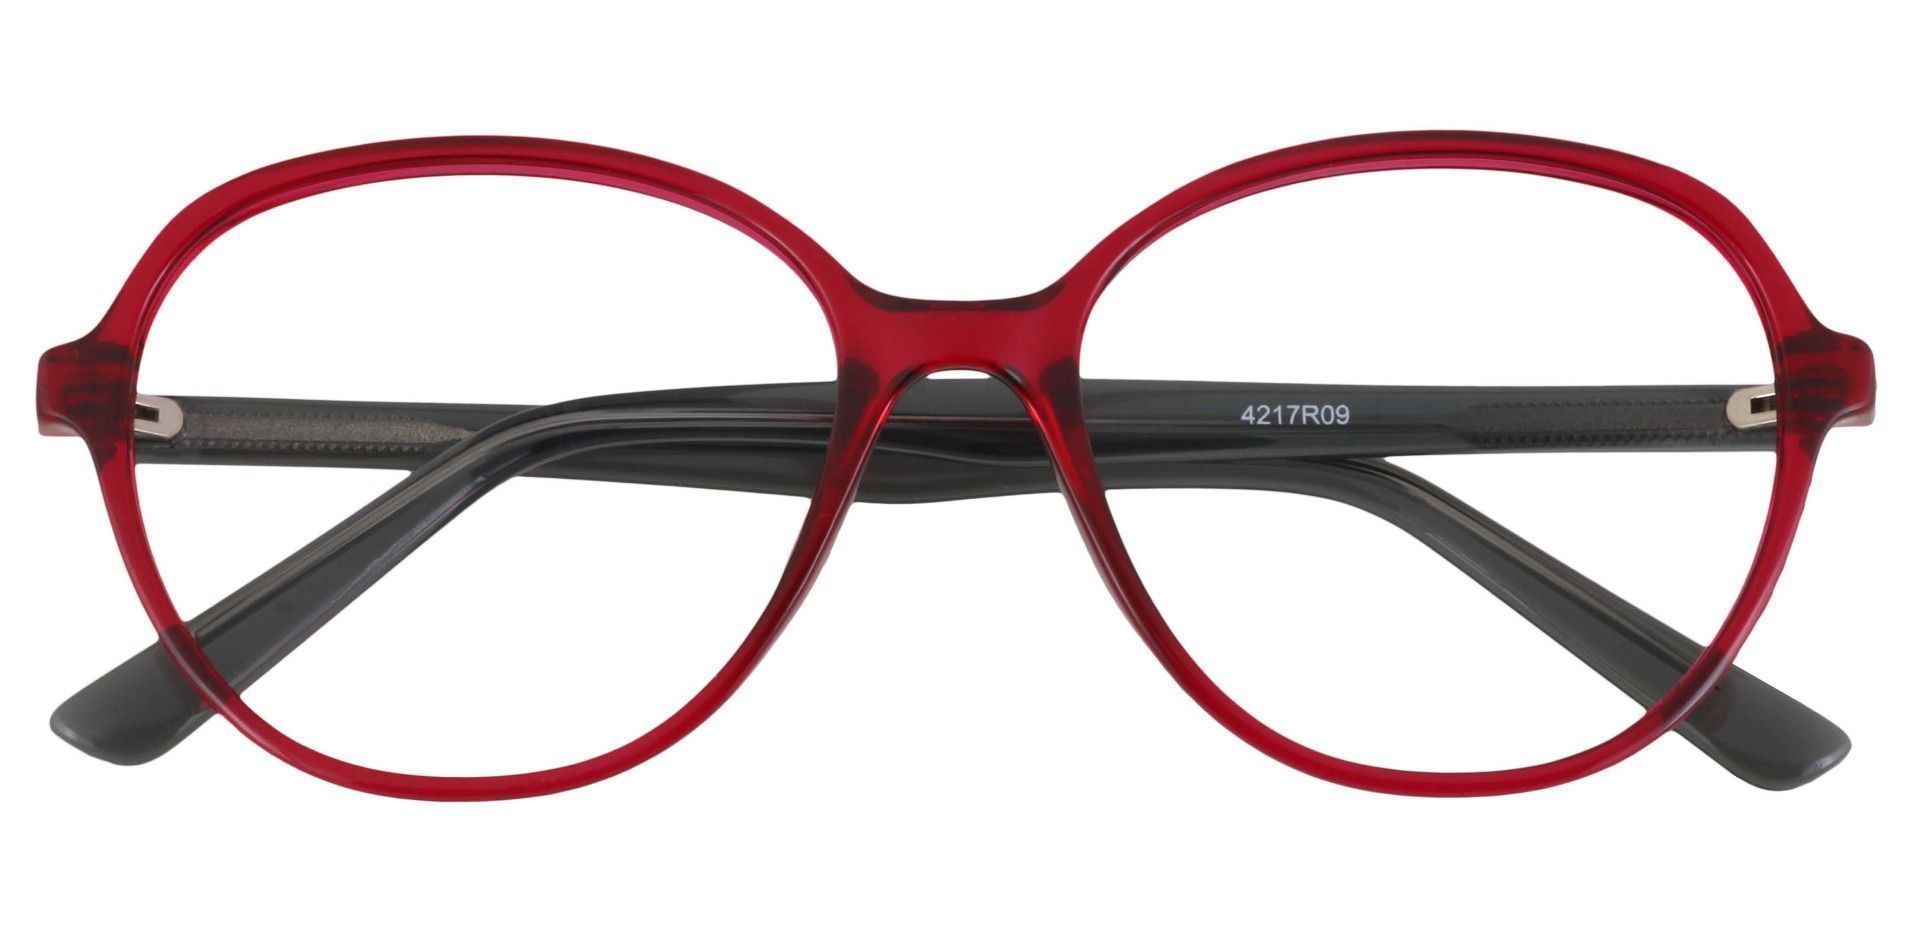 Luella Oval Prescription Glasses - Red